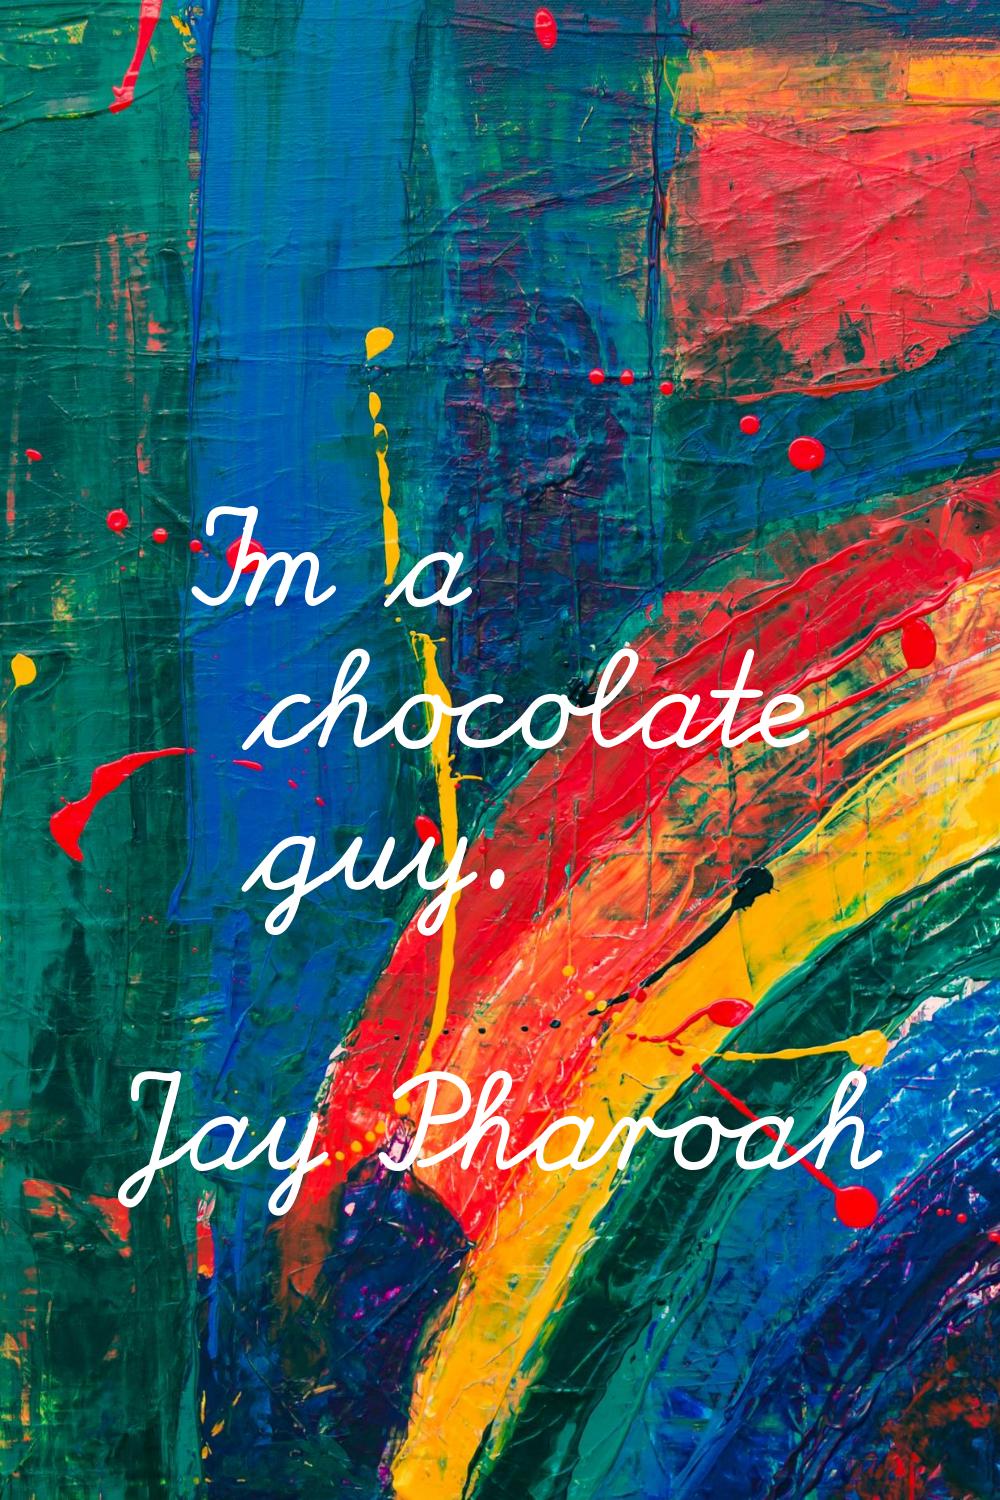 I'm a chocolate guy.